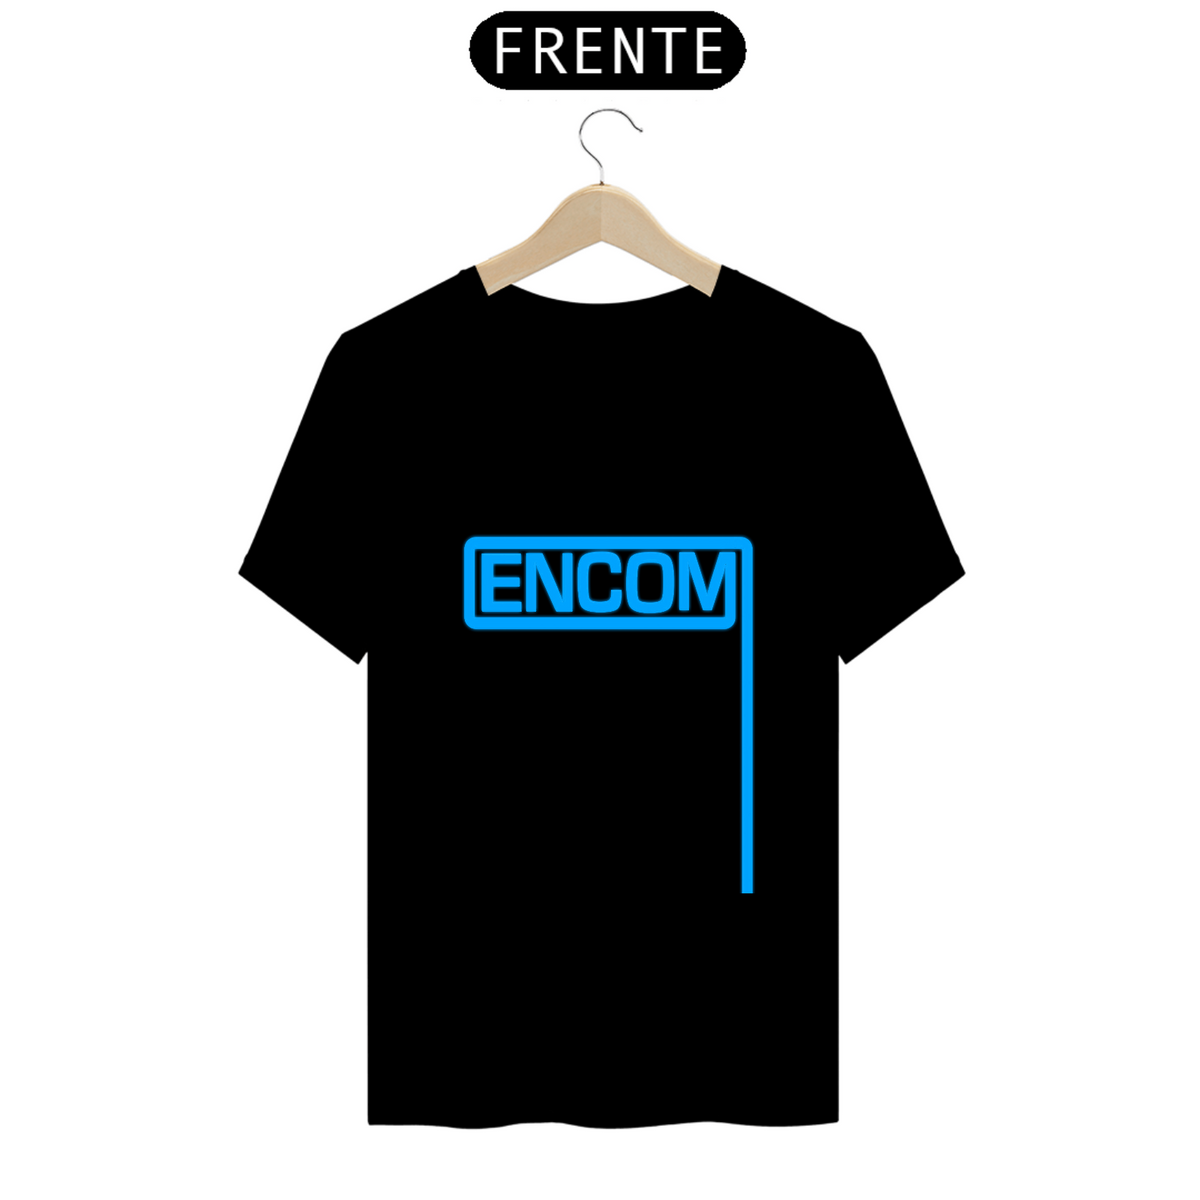 Nome do produto: Camisa Encom (Tron)